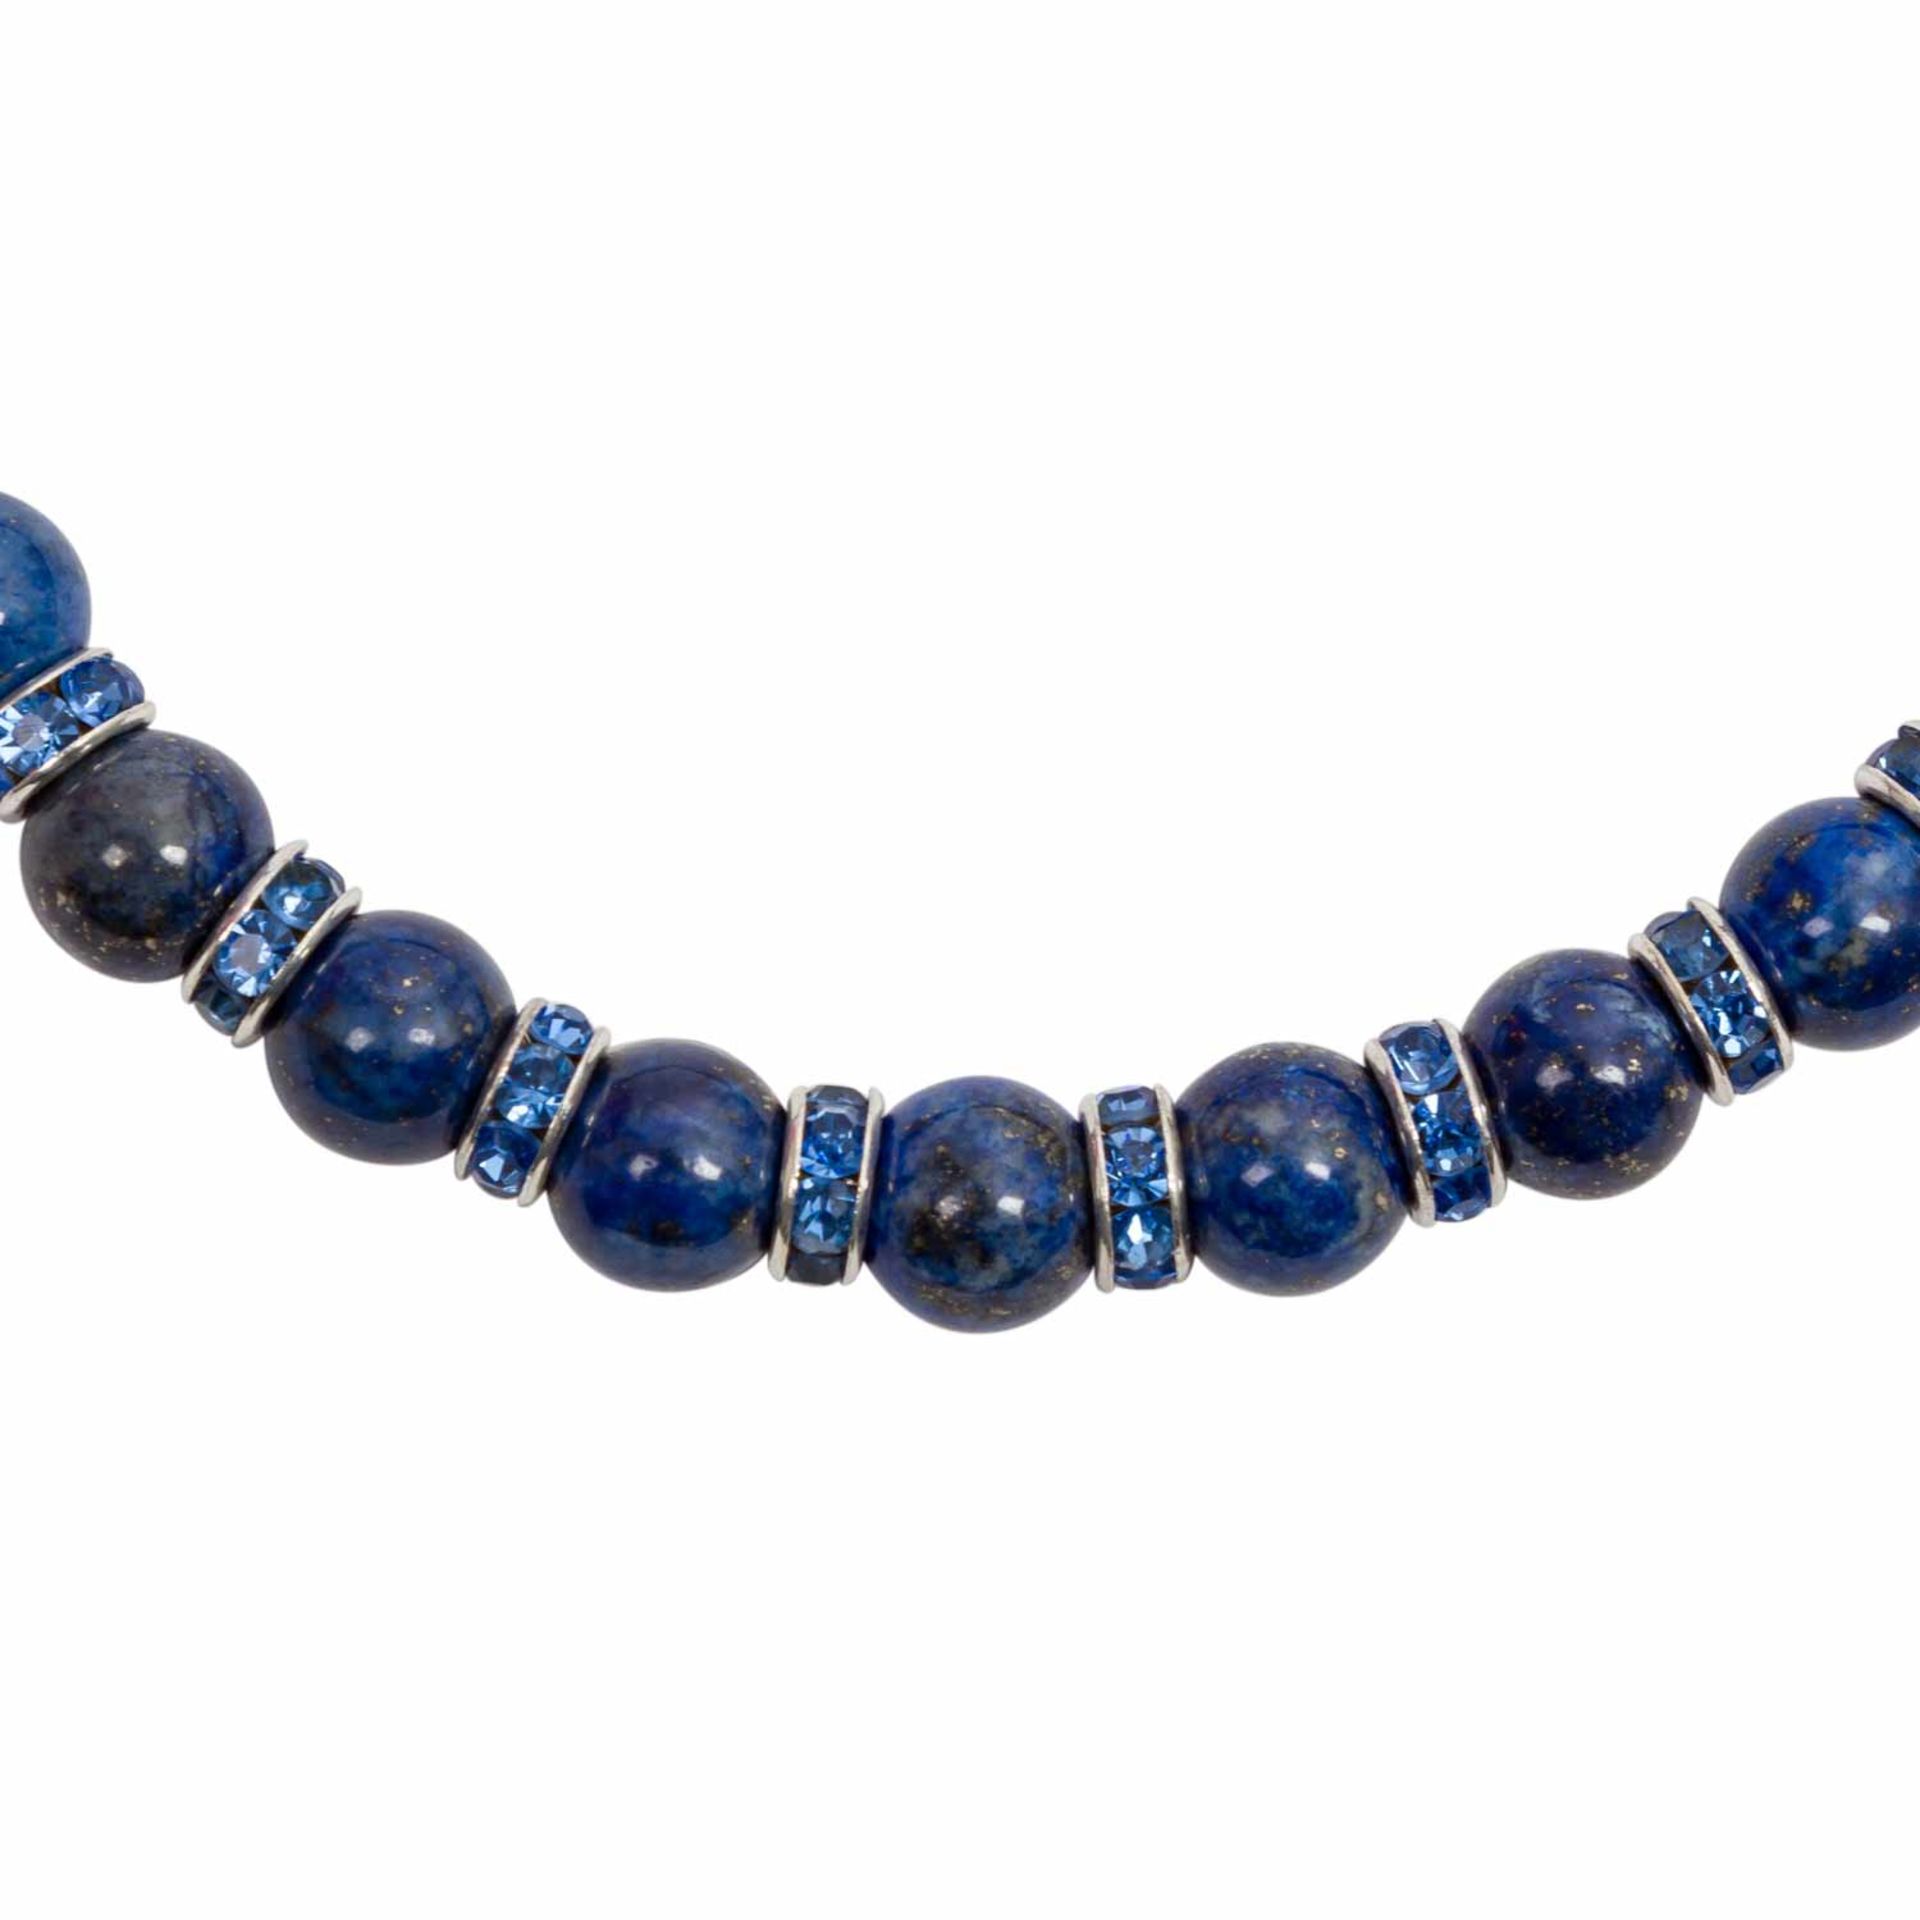 5 Steinketten,dabei 1 x mit Lapis Lazuli, leichte Gebrauchsspuren.5 stone chai - Bild 5 aus 6